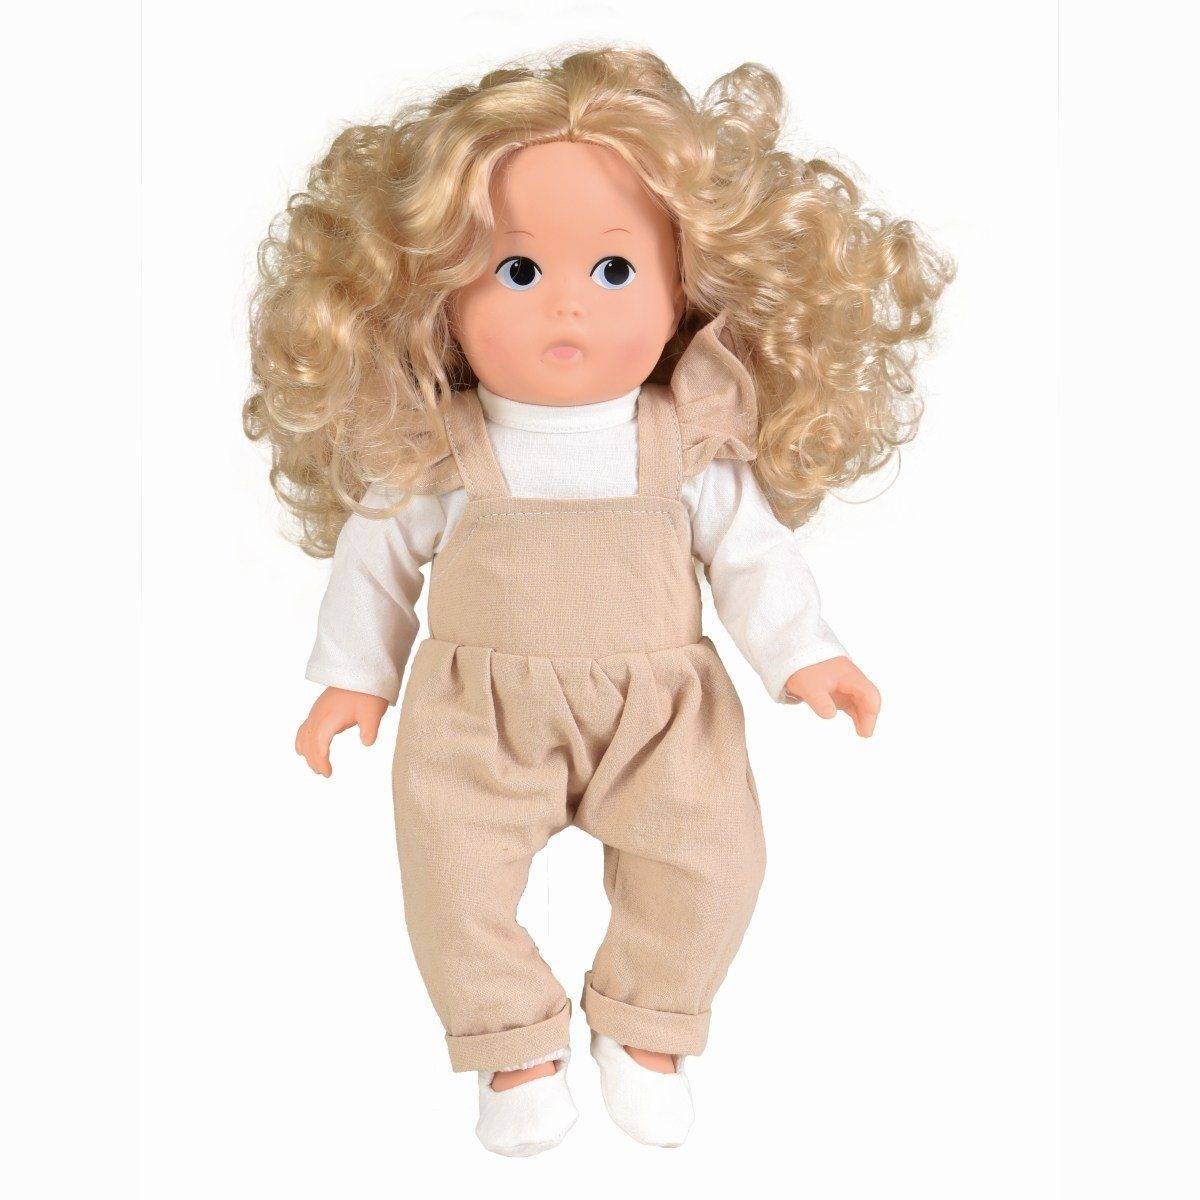 Egmont Toys Anziehpuppe Puppe Lien cm 32 Blonde Locken Rollenspiel